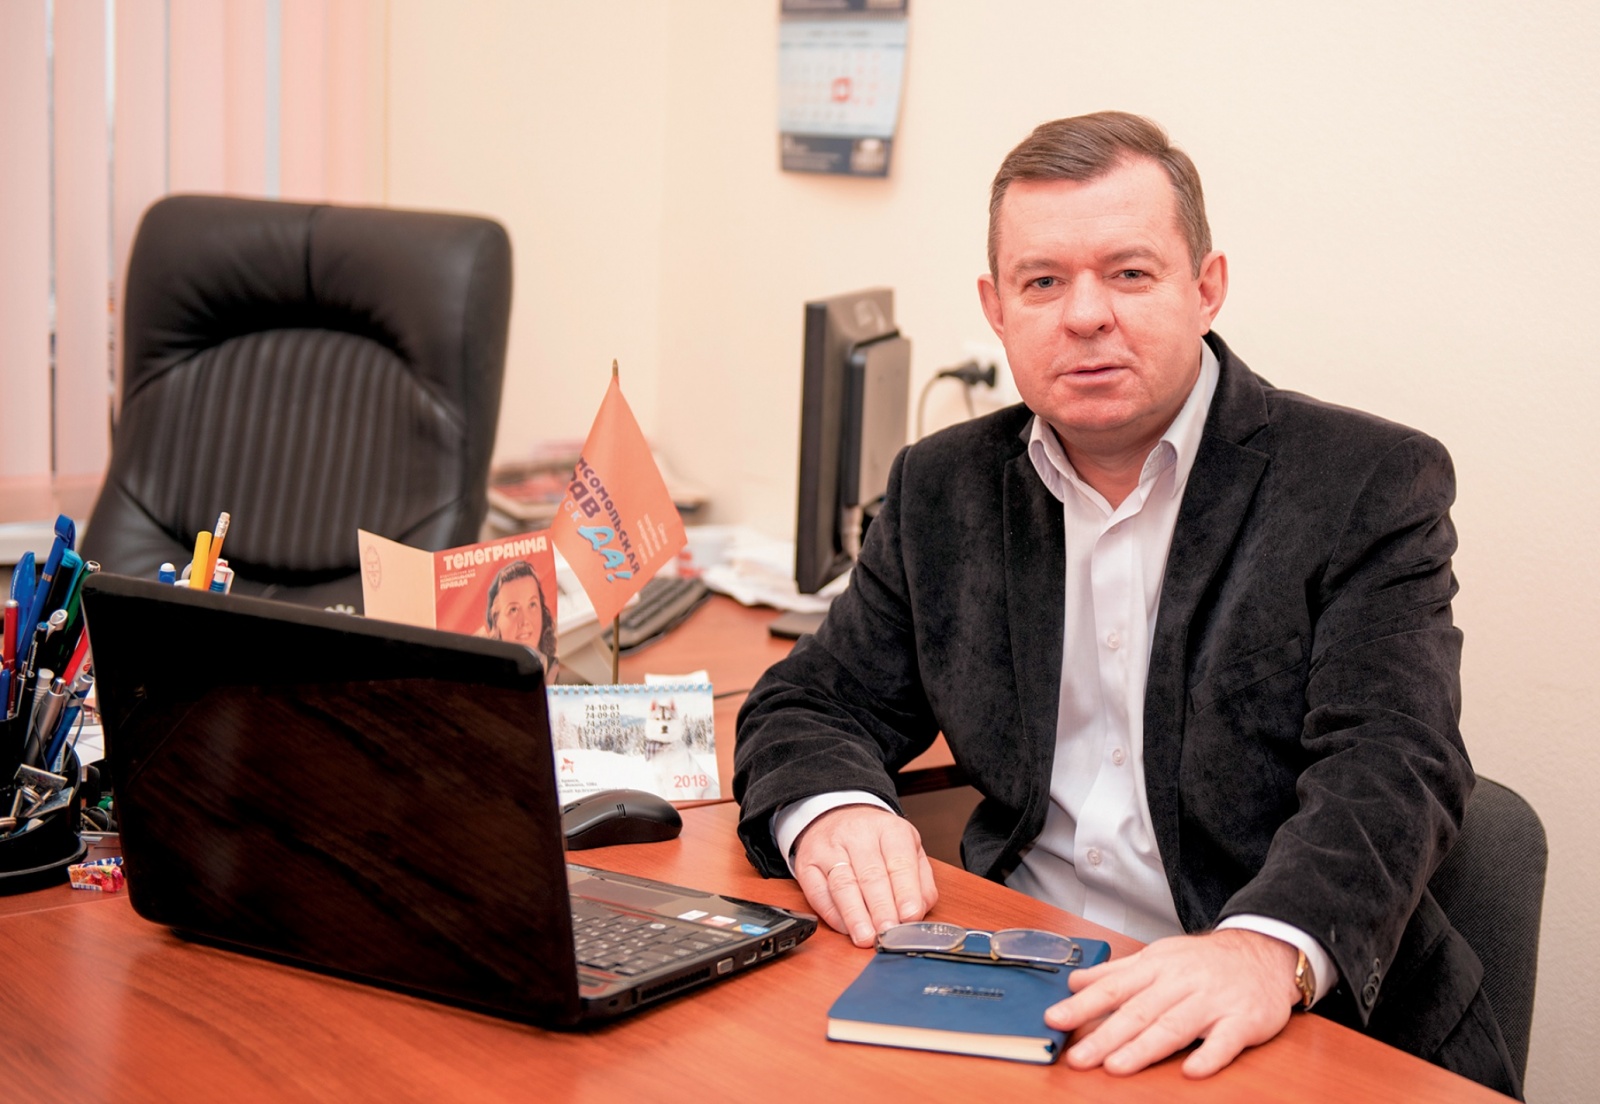  Виктор КИСЕЛЕВ: Распространение печатной продукции выходит на новый уровень